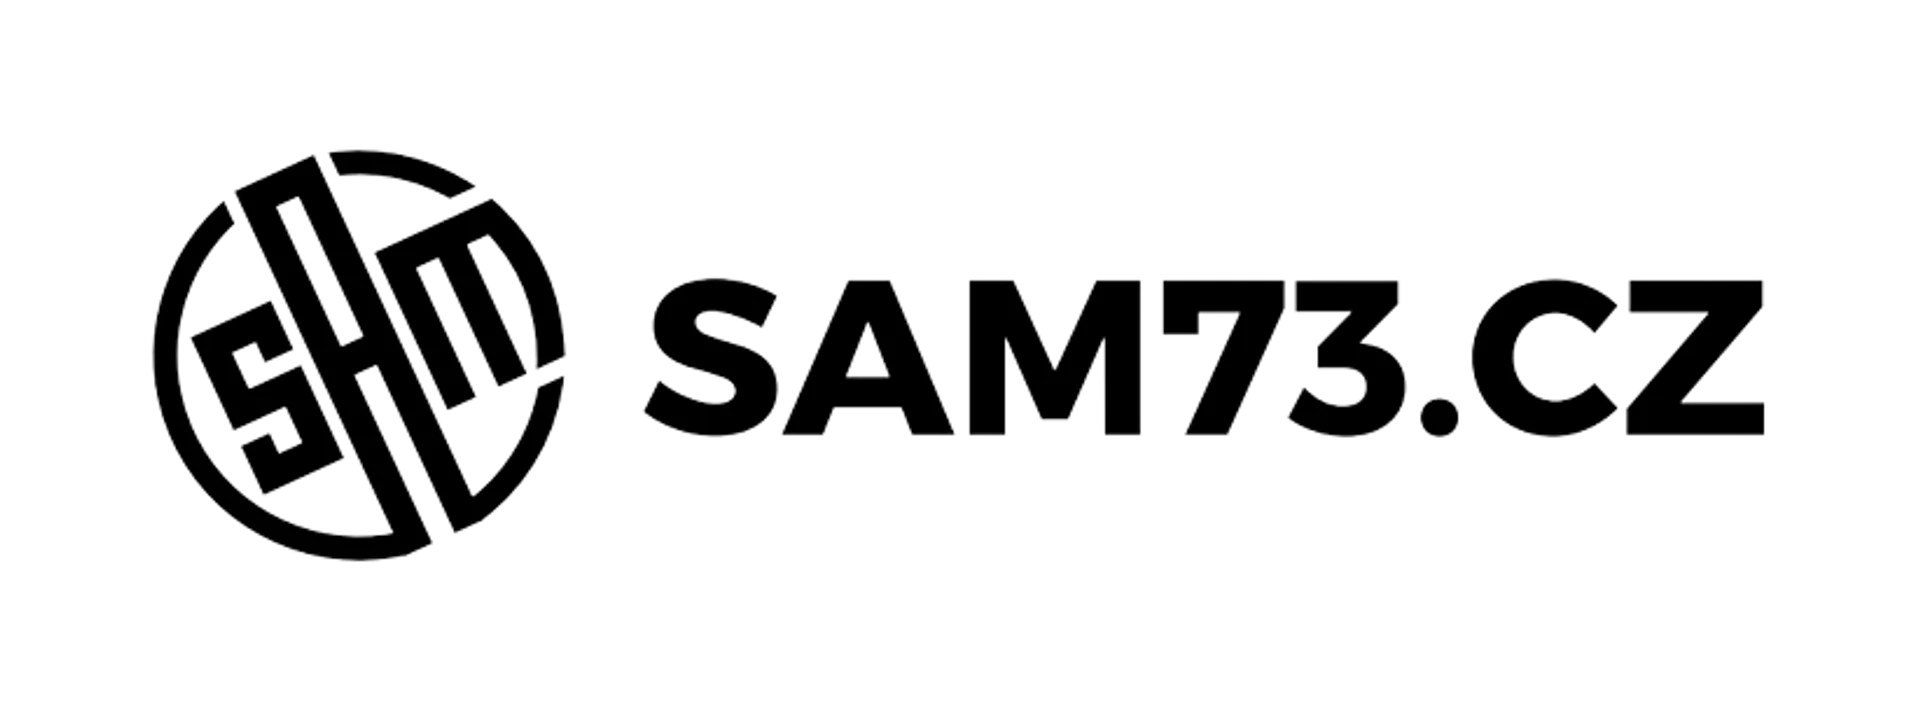 SAM 73 logo of current catalogue